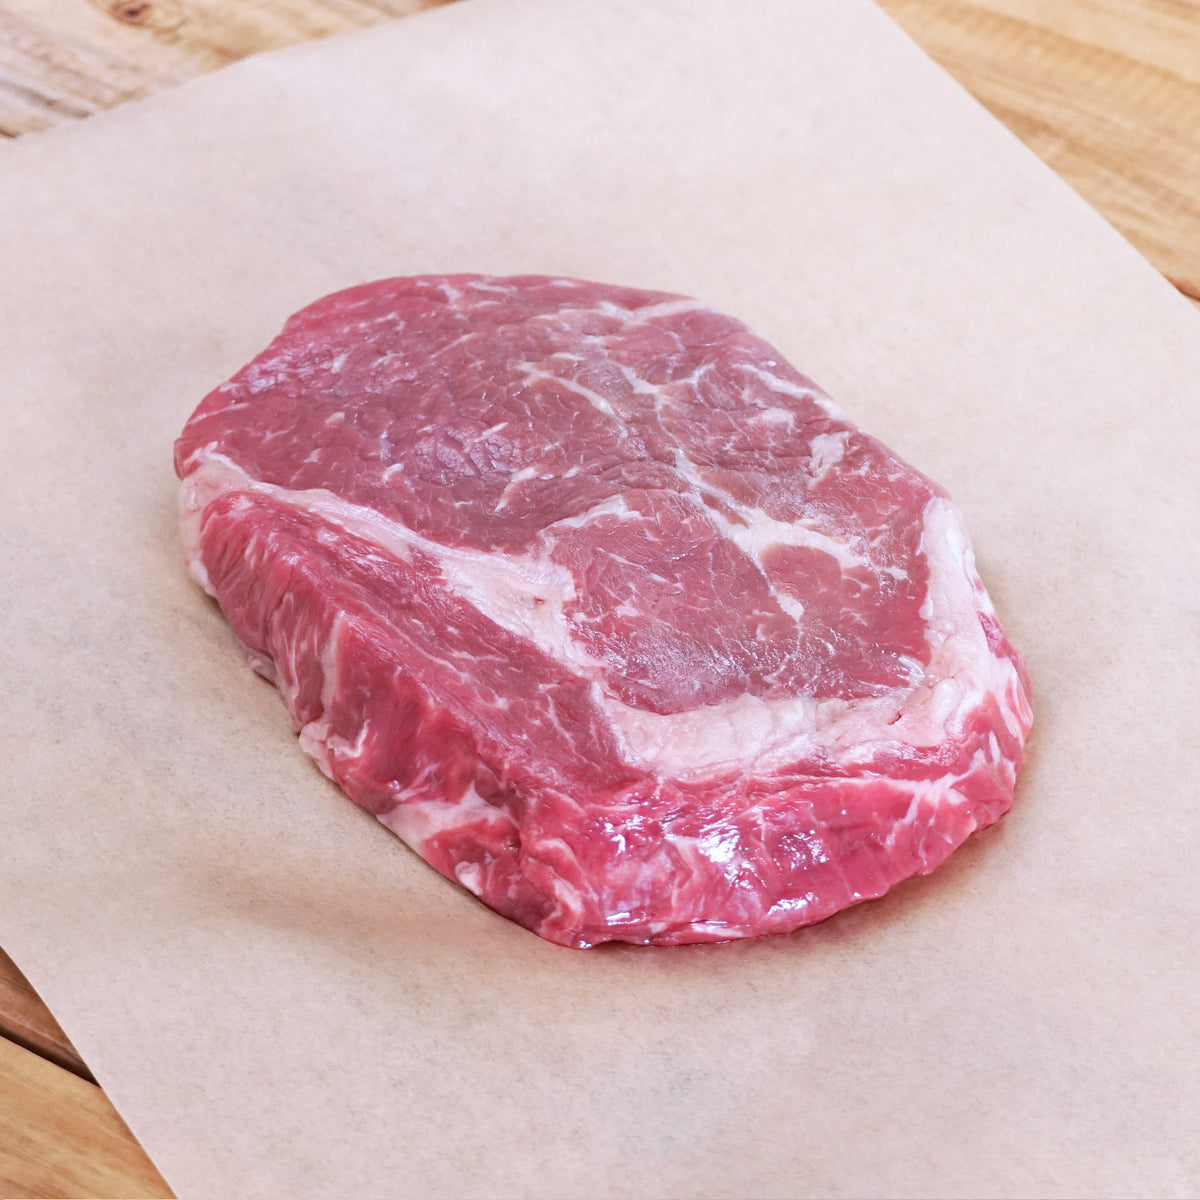 Curated Set of Premium Grain-Fed Beef MB5+ Ribeye & Striploin Steaks (20 Steaks, 4kg) - Horizon Farms